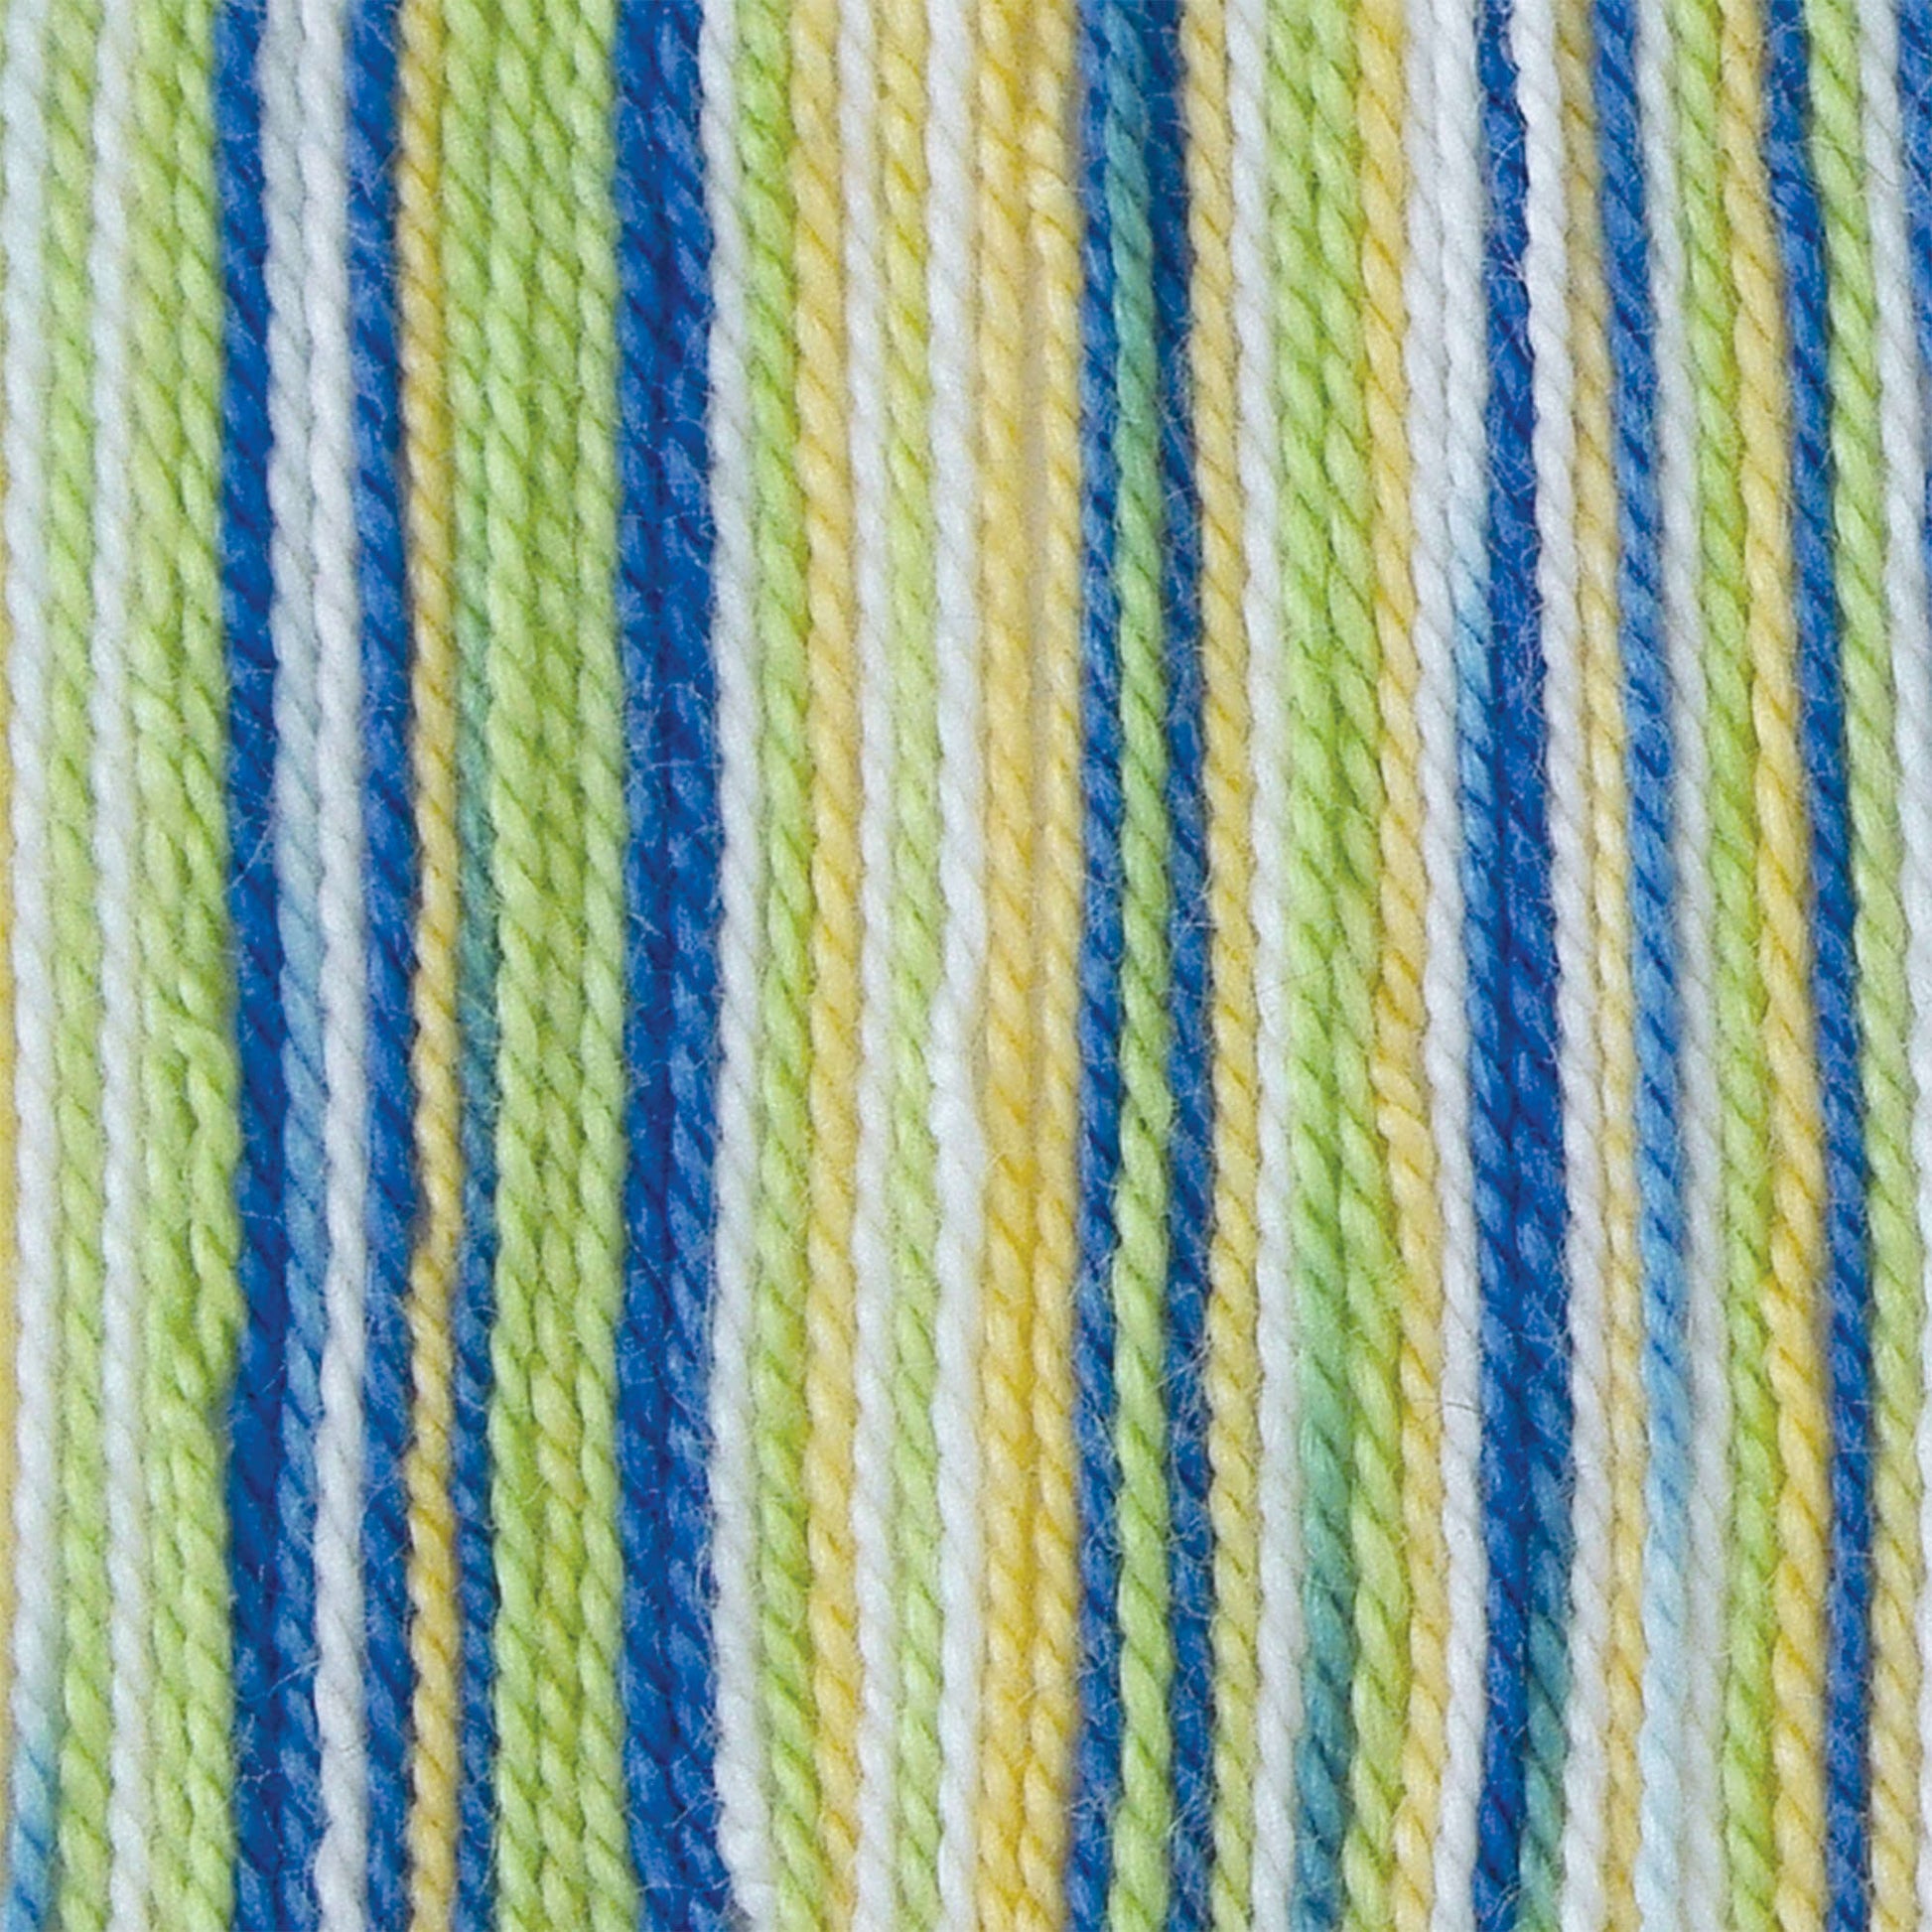 Bernat Handicrafter Ombre Crochet Thread - Discontinued